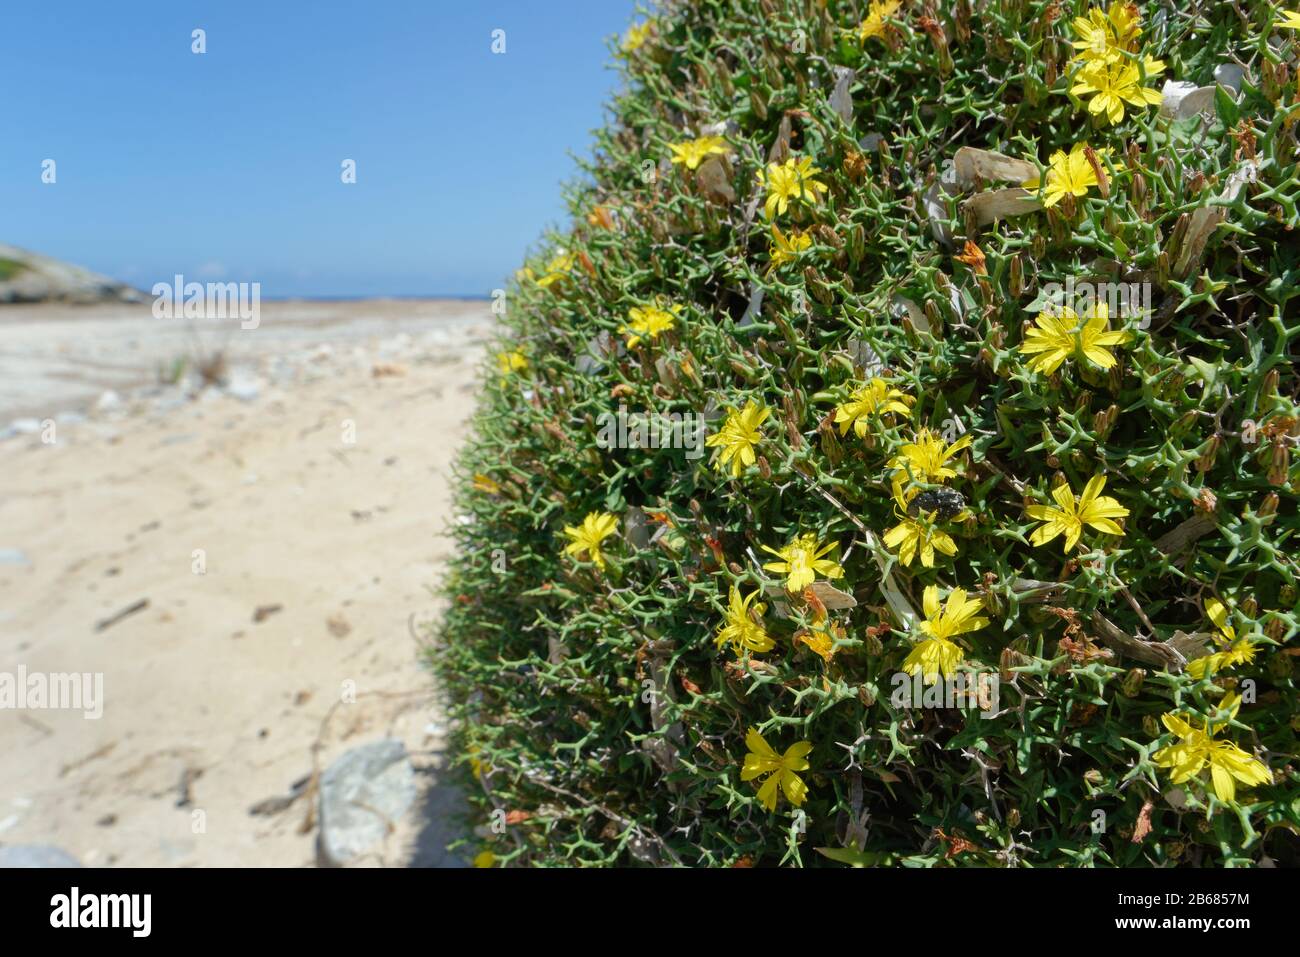 Socarrell (Launaea cervicornis) une plante d'épinie qui se développe en touffes en forme de coussin endémiques à Majorque et Minorque, fleurit sur les dunes de sable, Majorque. Banque D'Images